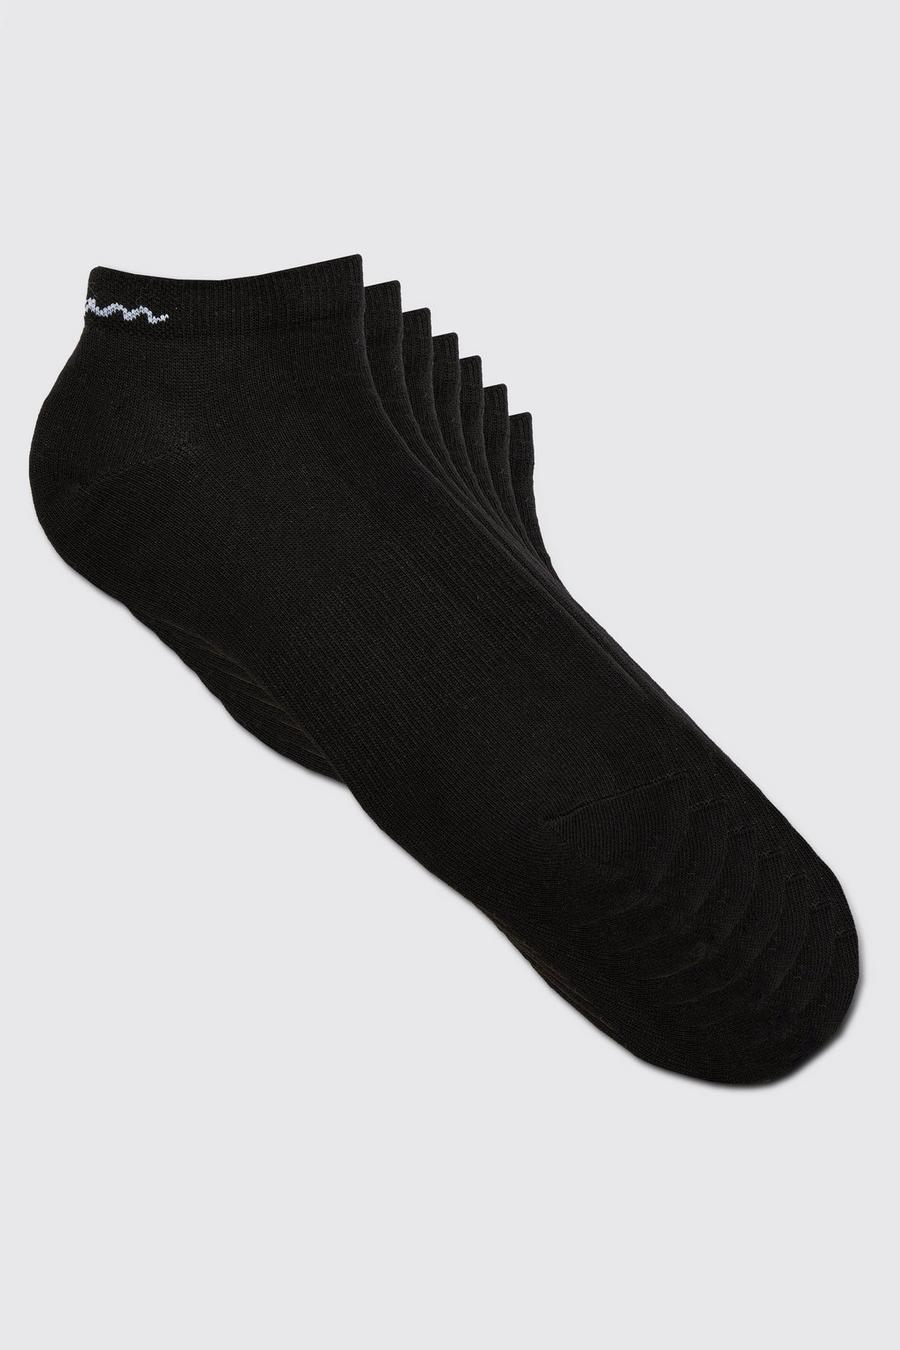 Lot de 7 paires de chaussettes - MAN, Black